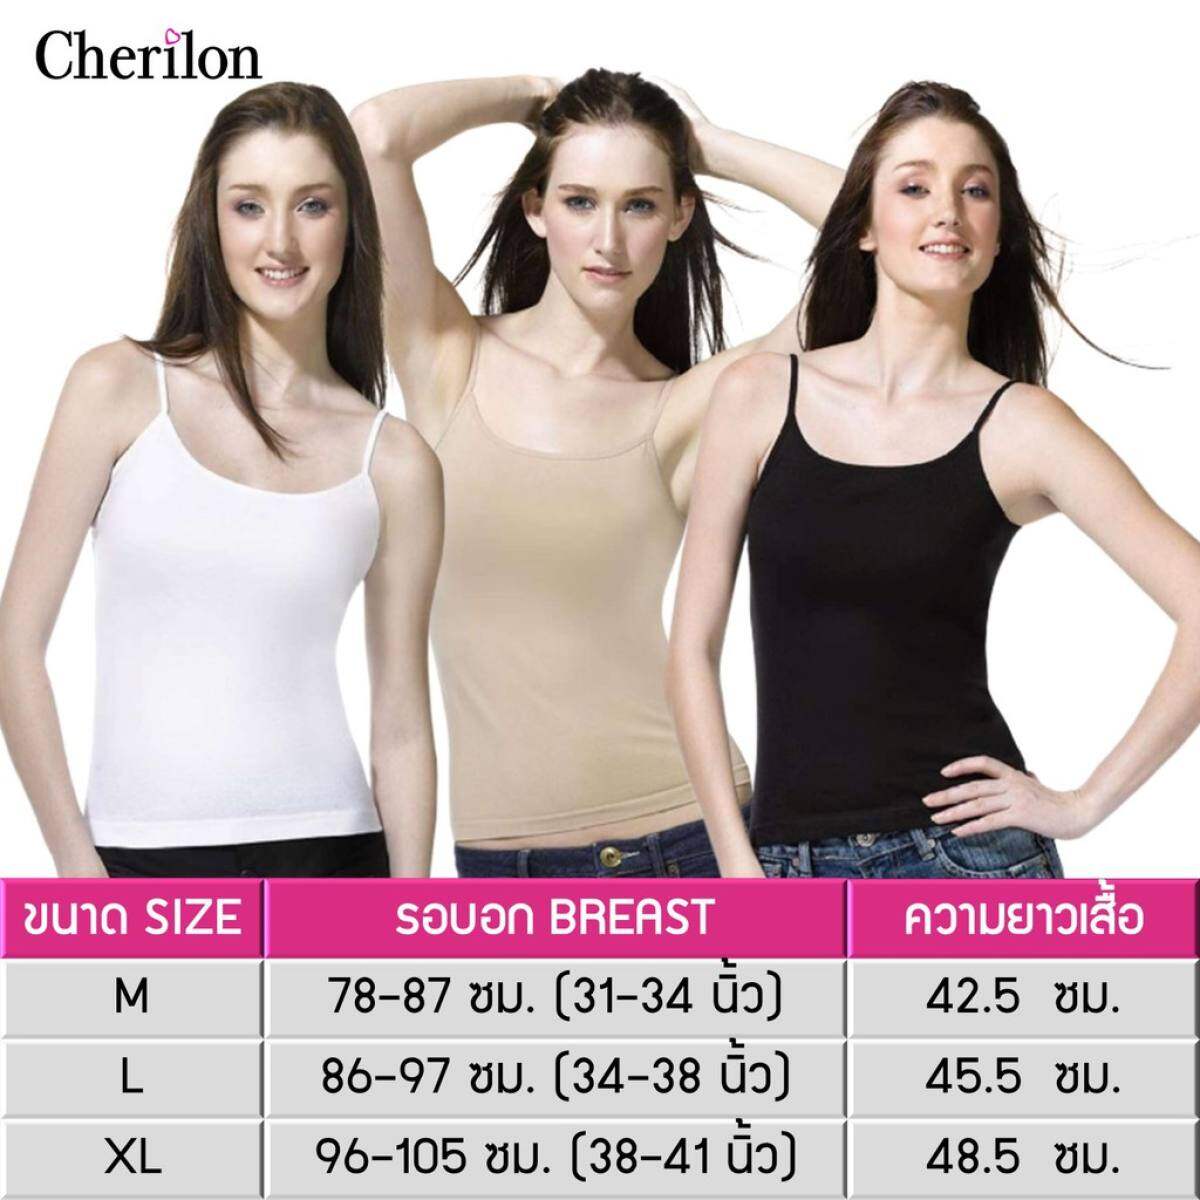 Cherilon เสื้อสายเดี่ยว เสื้อซับใน ซับใน เสื้อกล้าม ผู้หญิง (1 ตัว) เชอรีล่อน Cotton 100% นุ่ม บาง ไร้ตะเข็บข้าง ใส่สบาย ระบายอากาศ สีขาว ดำ เนื้อ